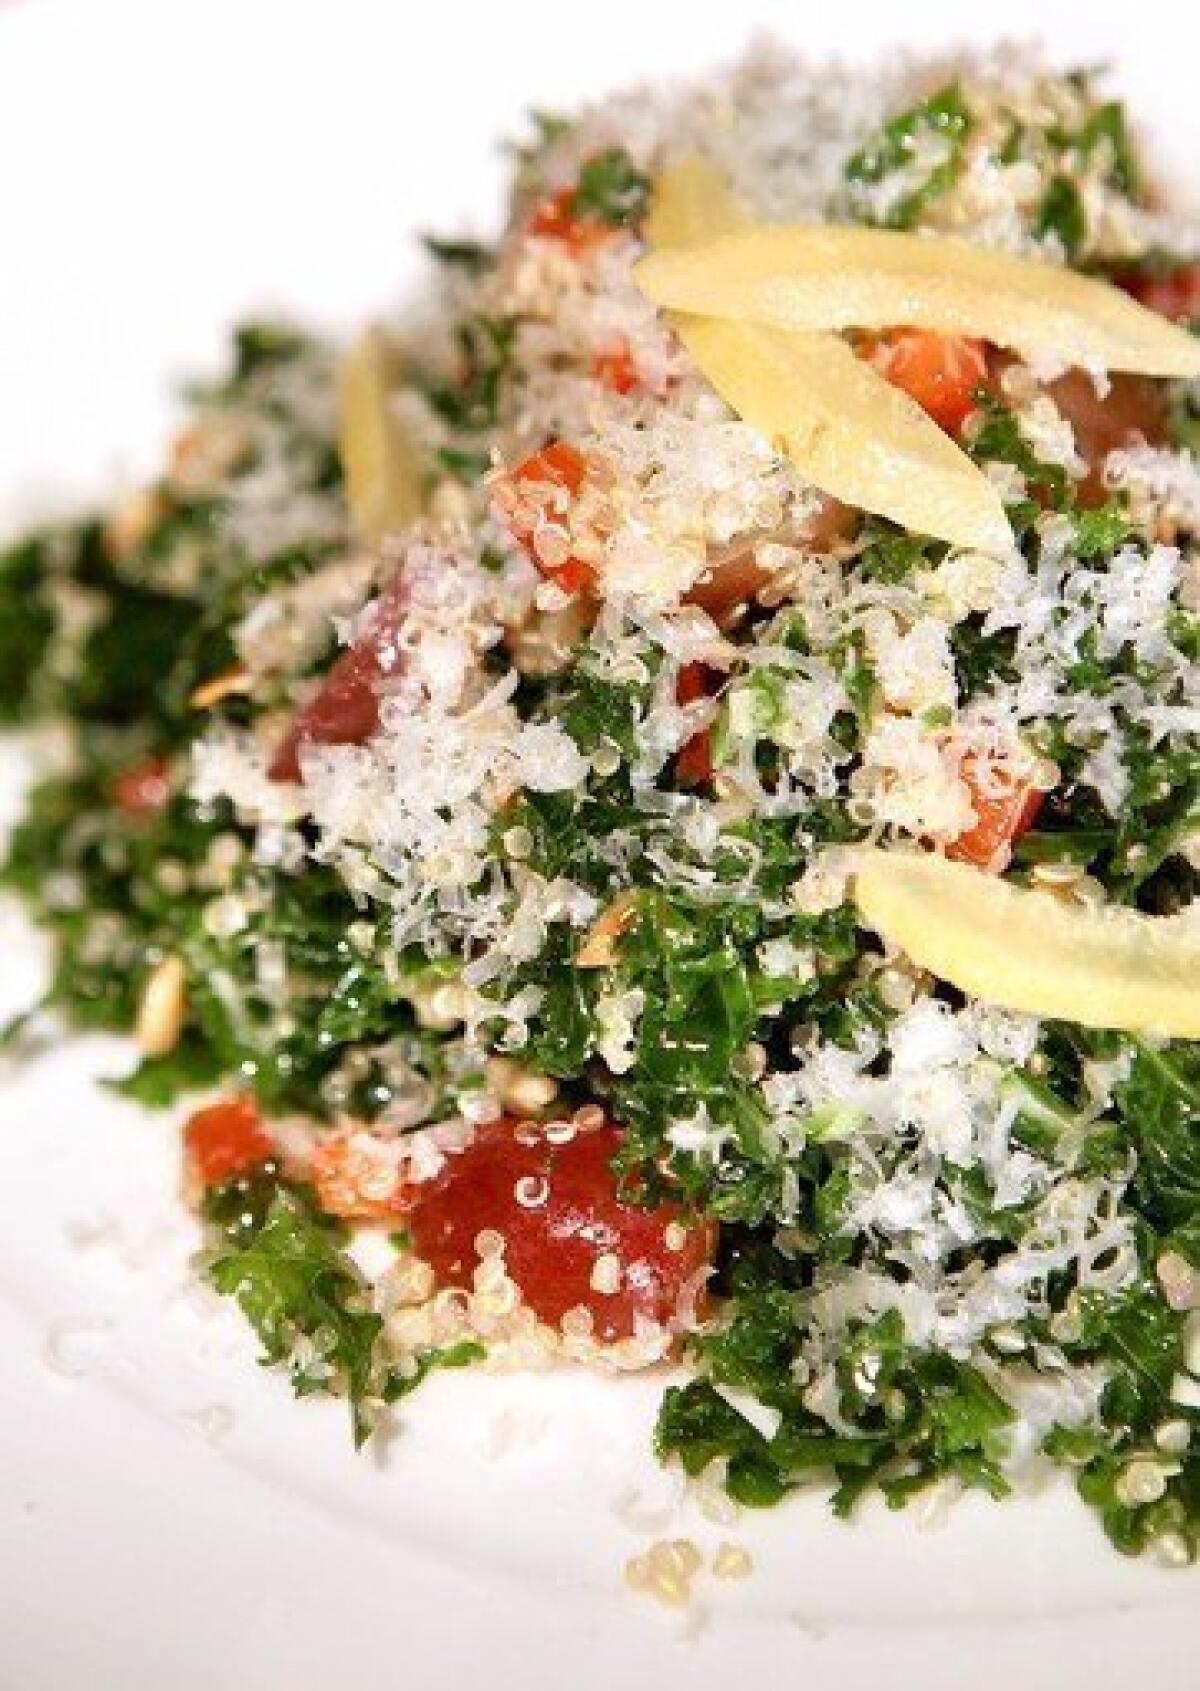 Kale-and-quinoa salad from La Grande Orange Cafe in Pasadena.